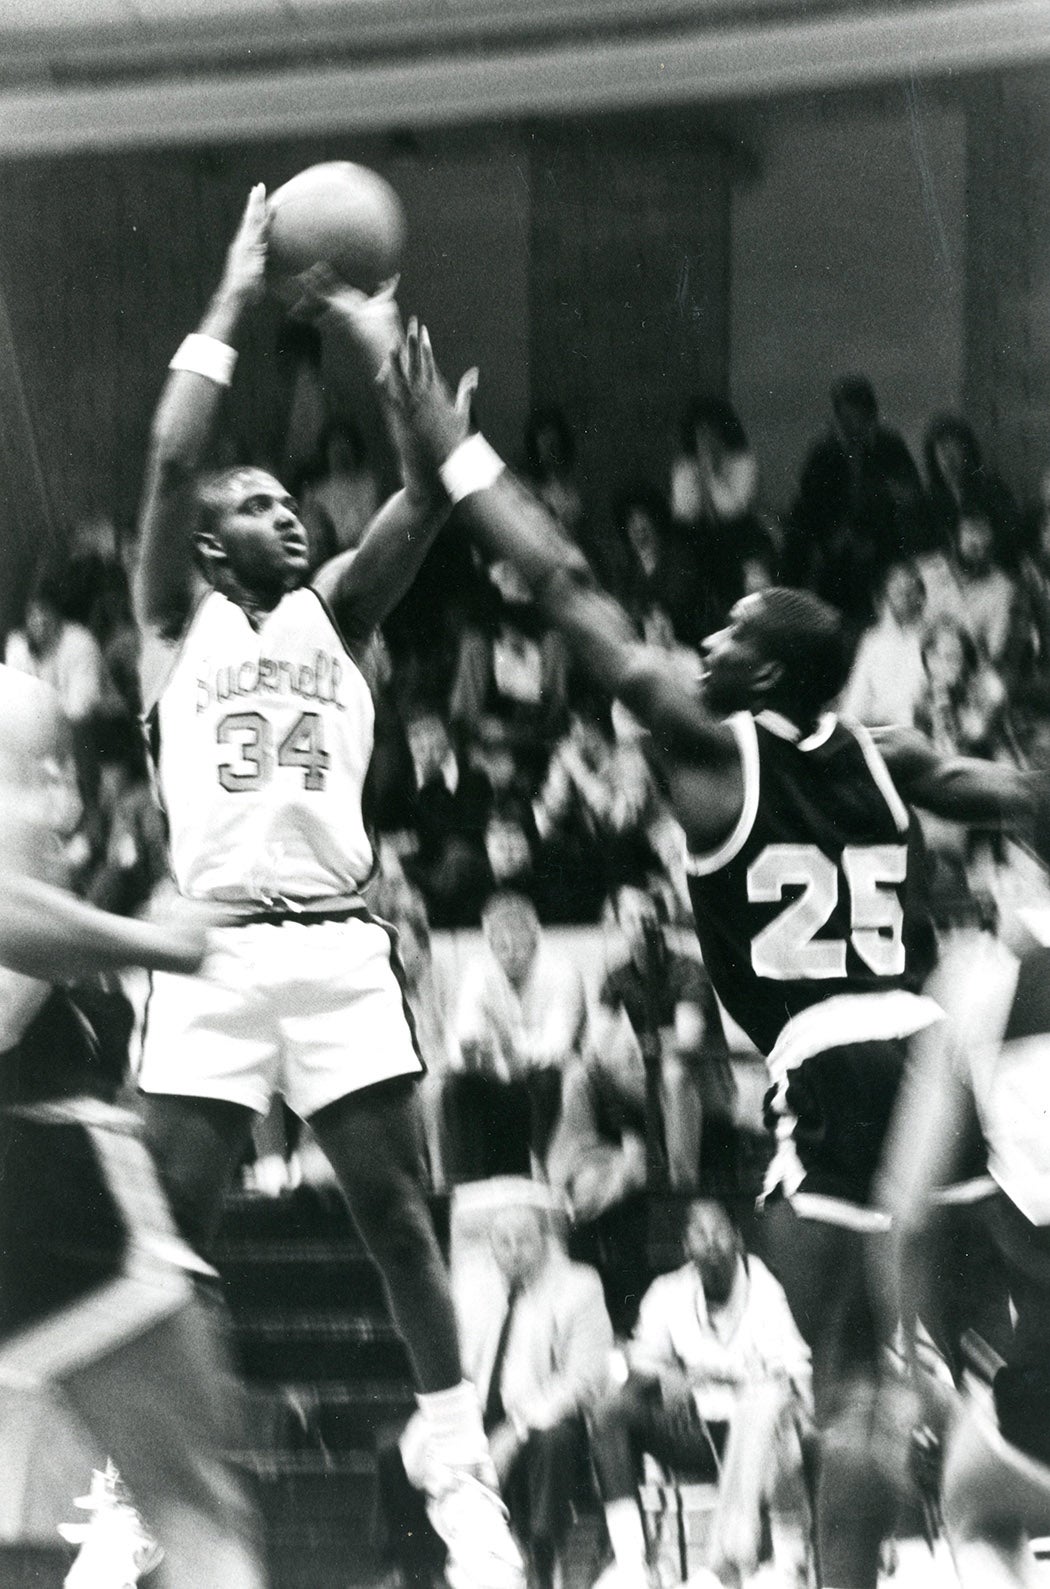 1987 Bucknell University men's basketball game against Rider University